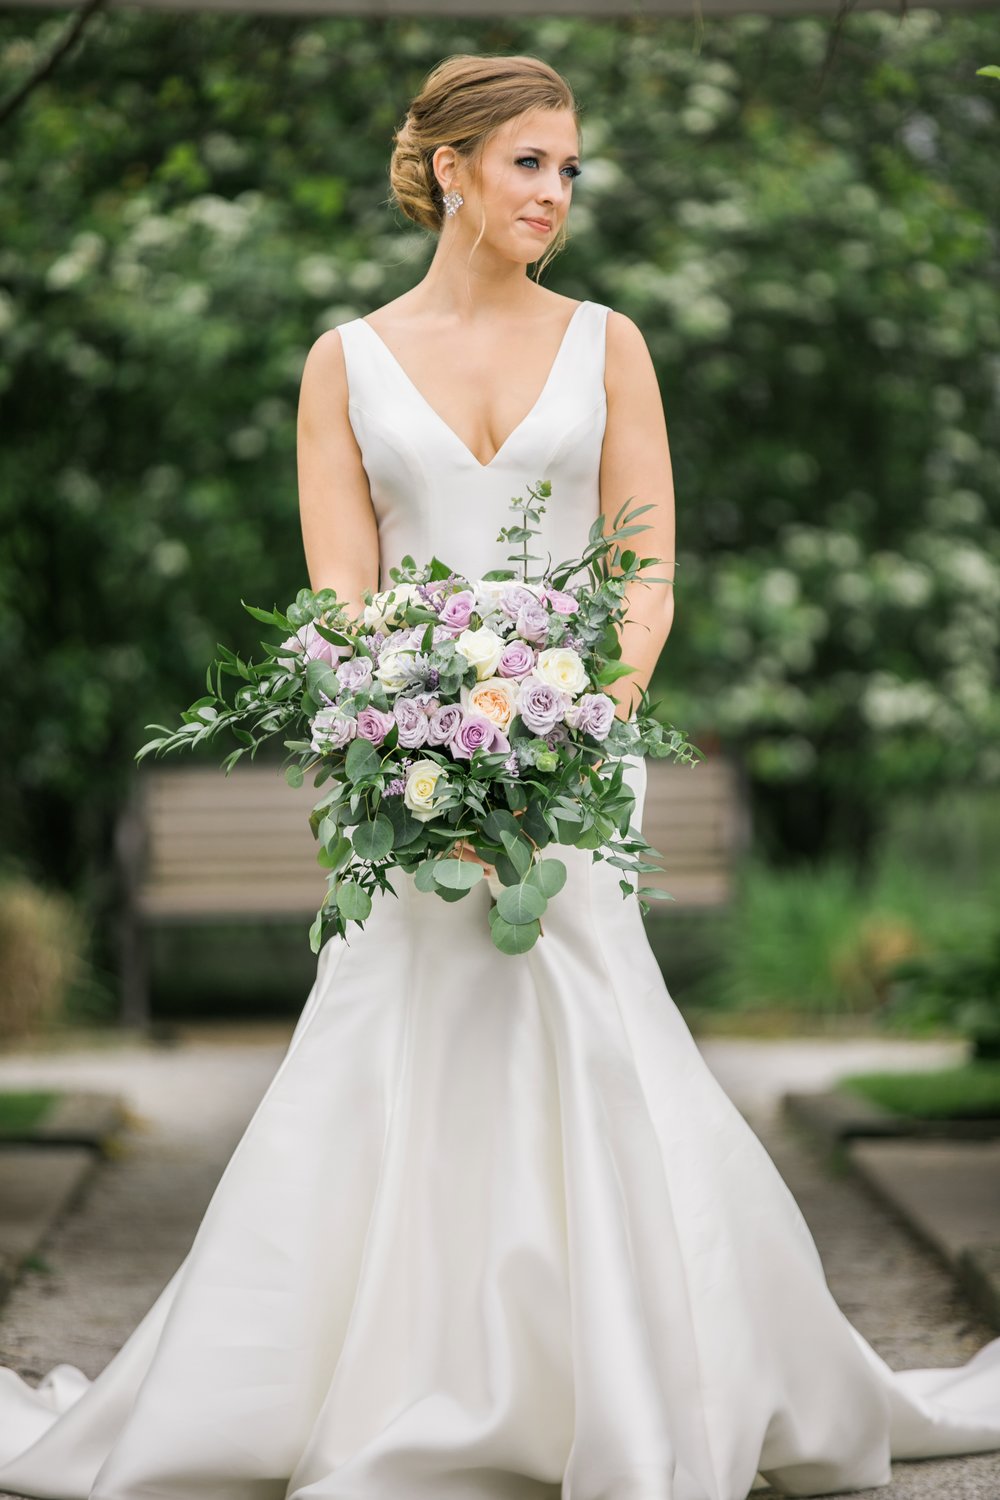 Bride-with-kathy-florist-flowers.jpg